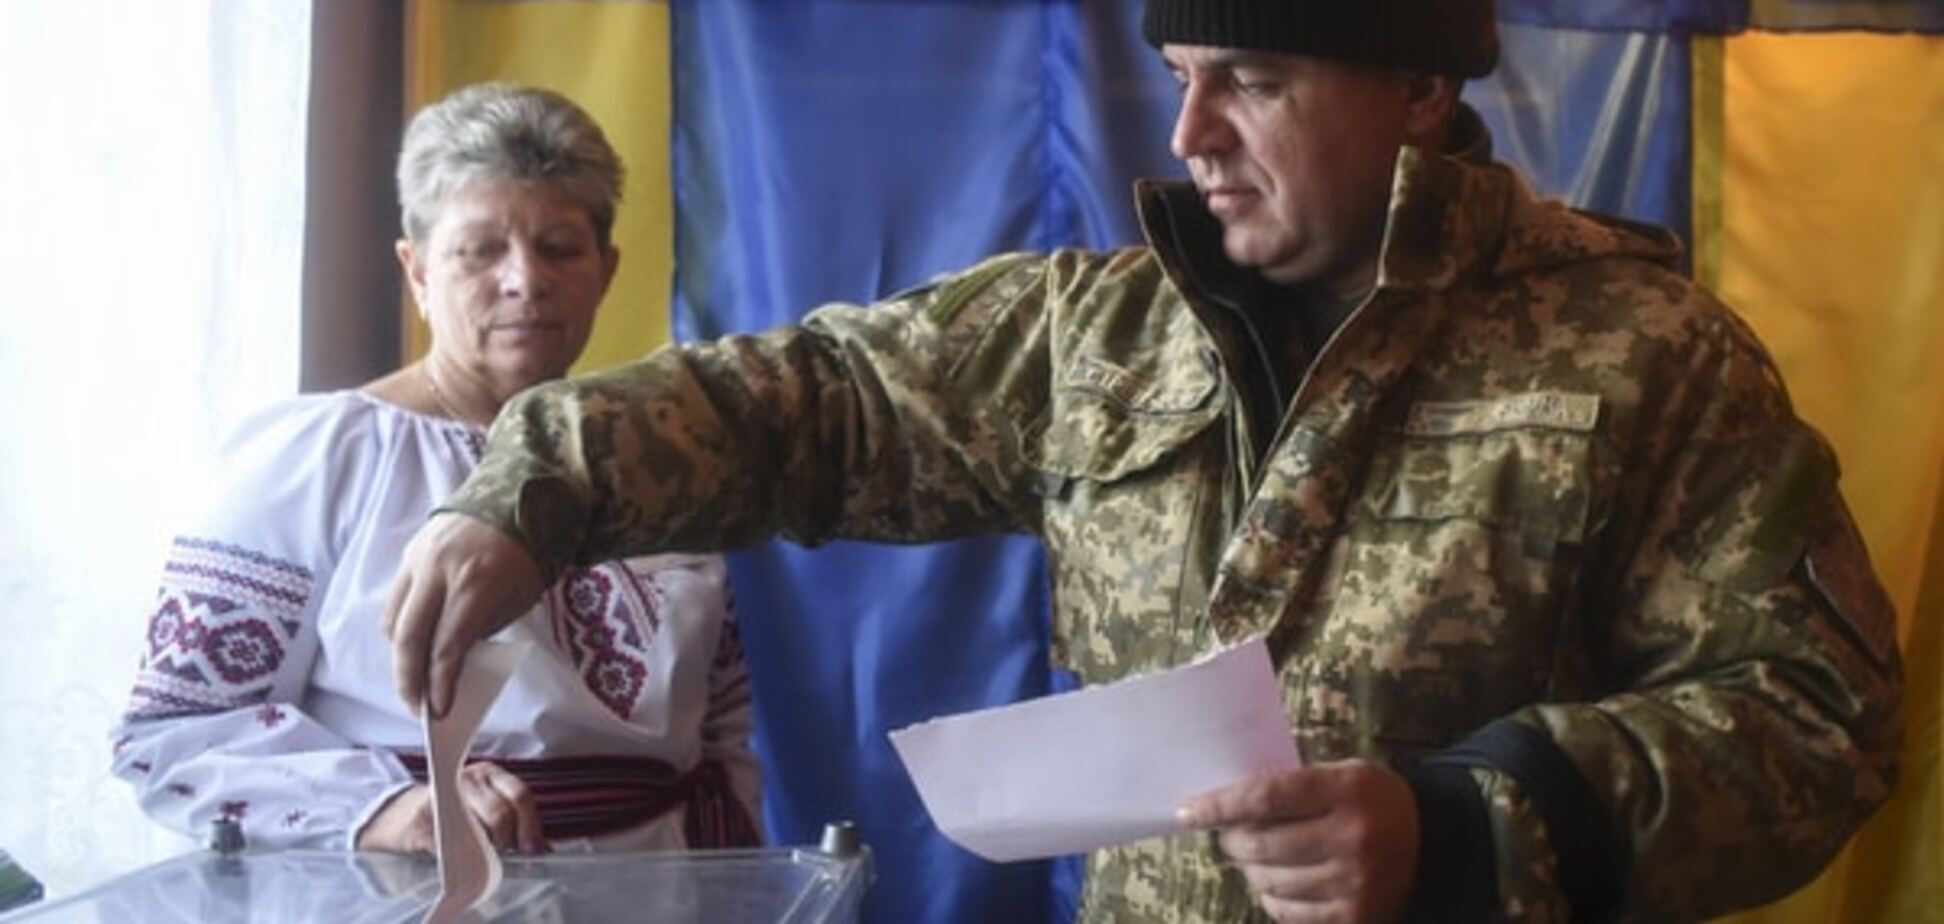 ОБСЕ: украинские выборы отвечали демократическим стандартам